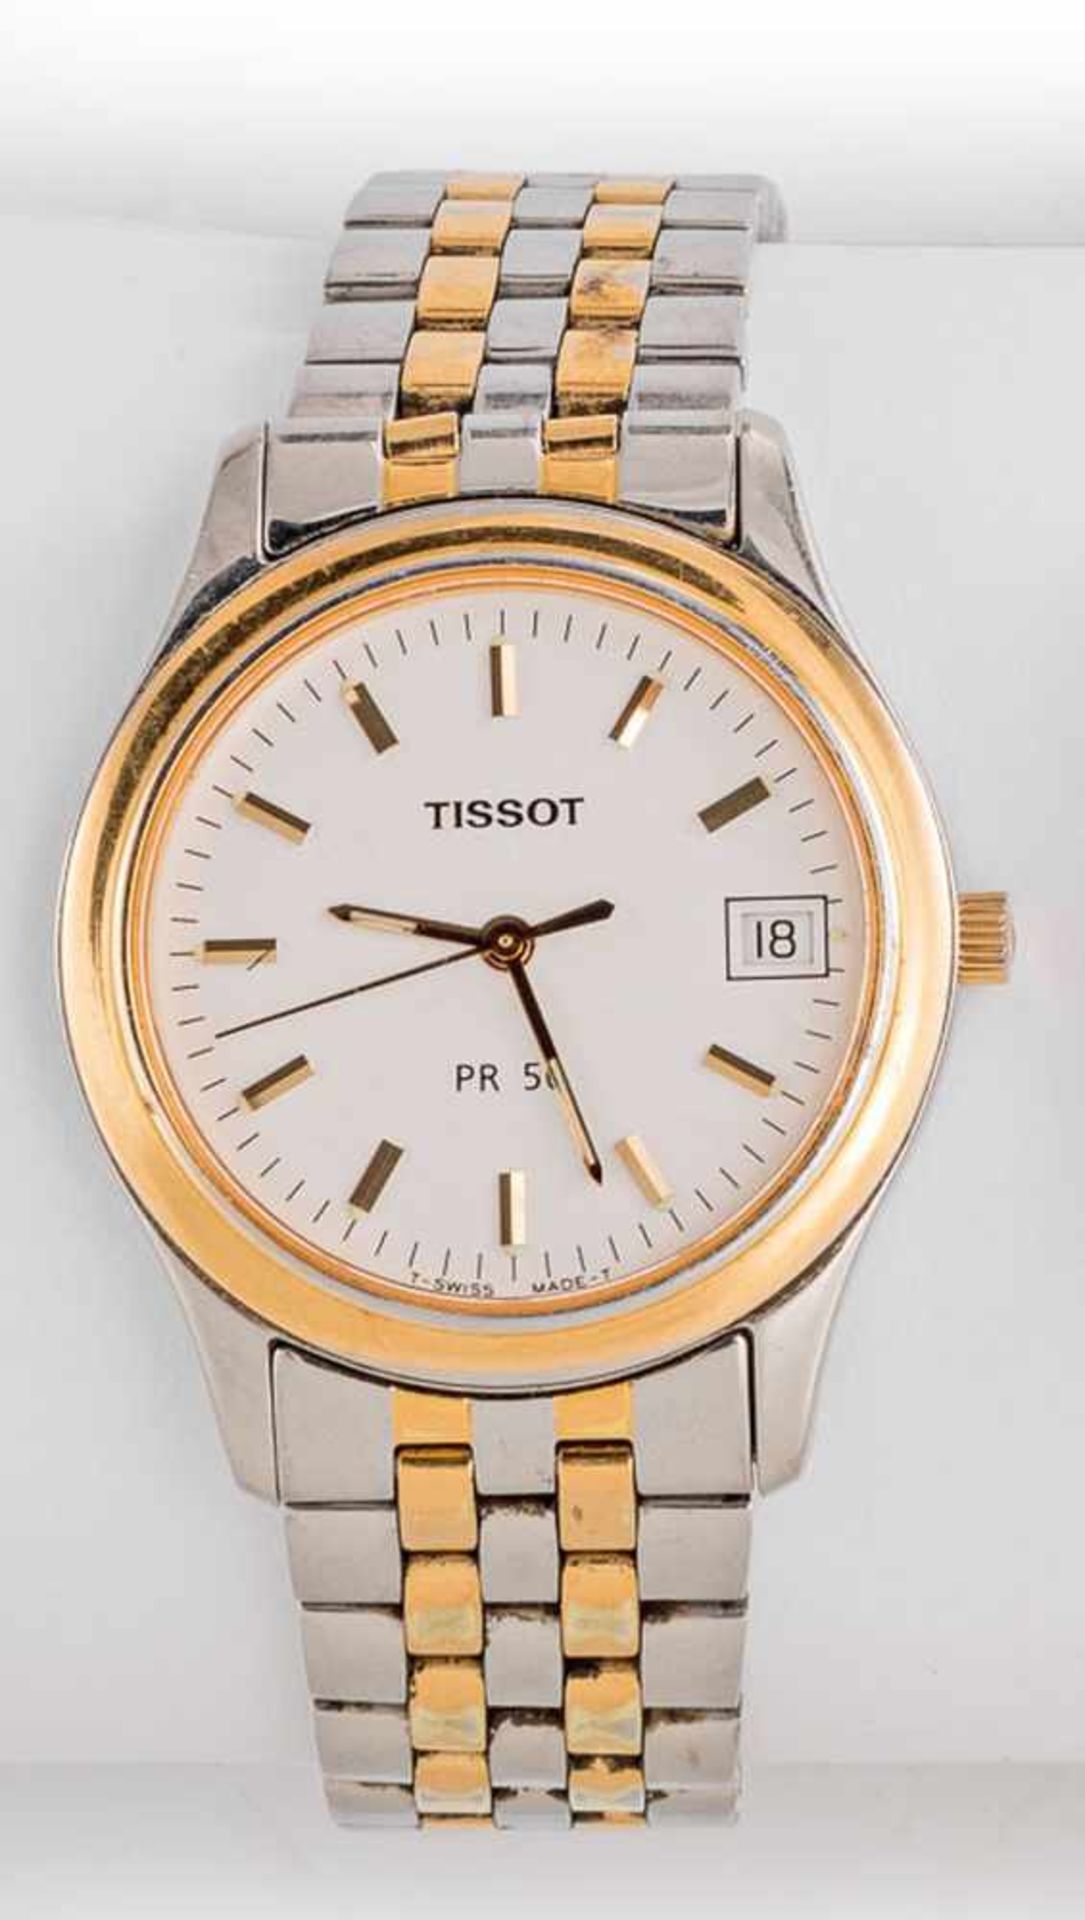 Tissot-ArmbanduhrPK 50. Stahl, teilweise vergoldet. Helles Zifferblatt mit Zentralsekunde und